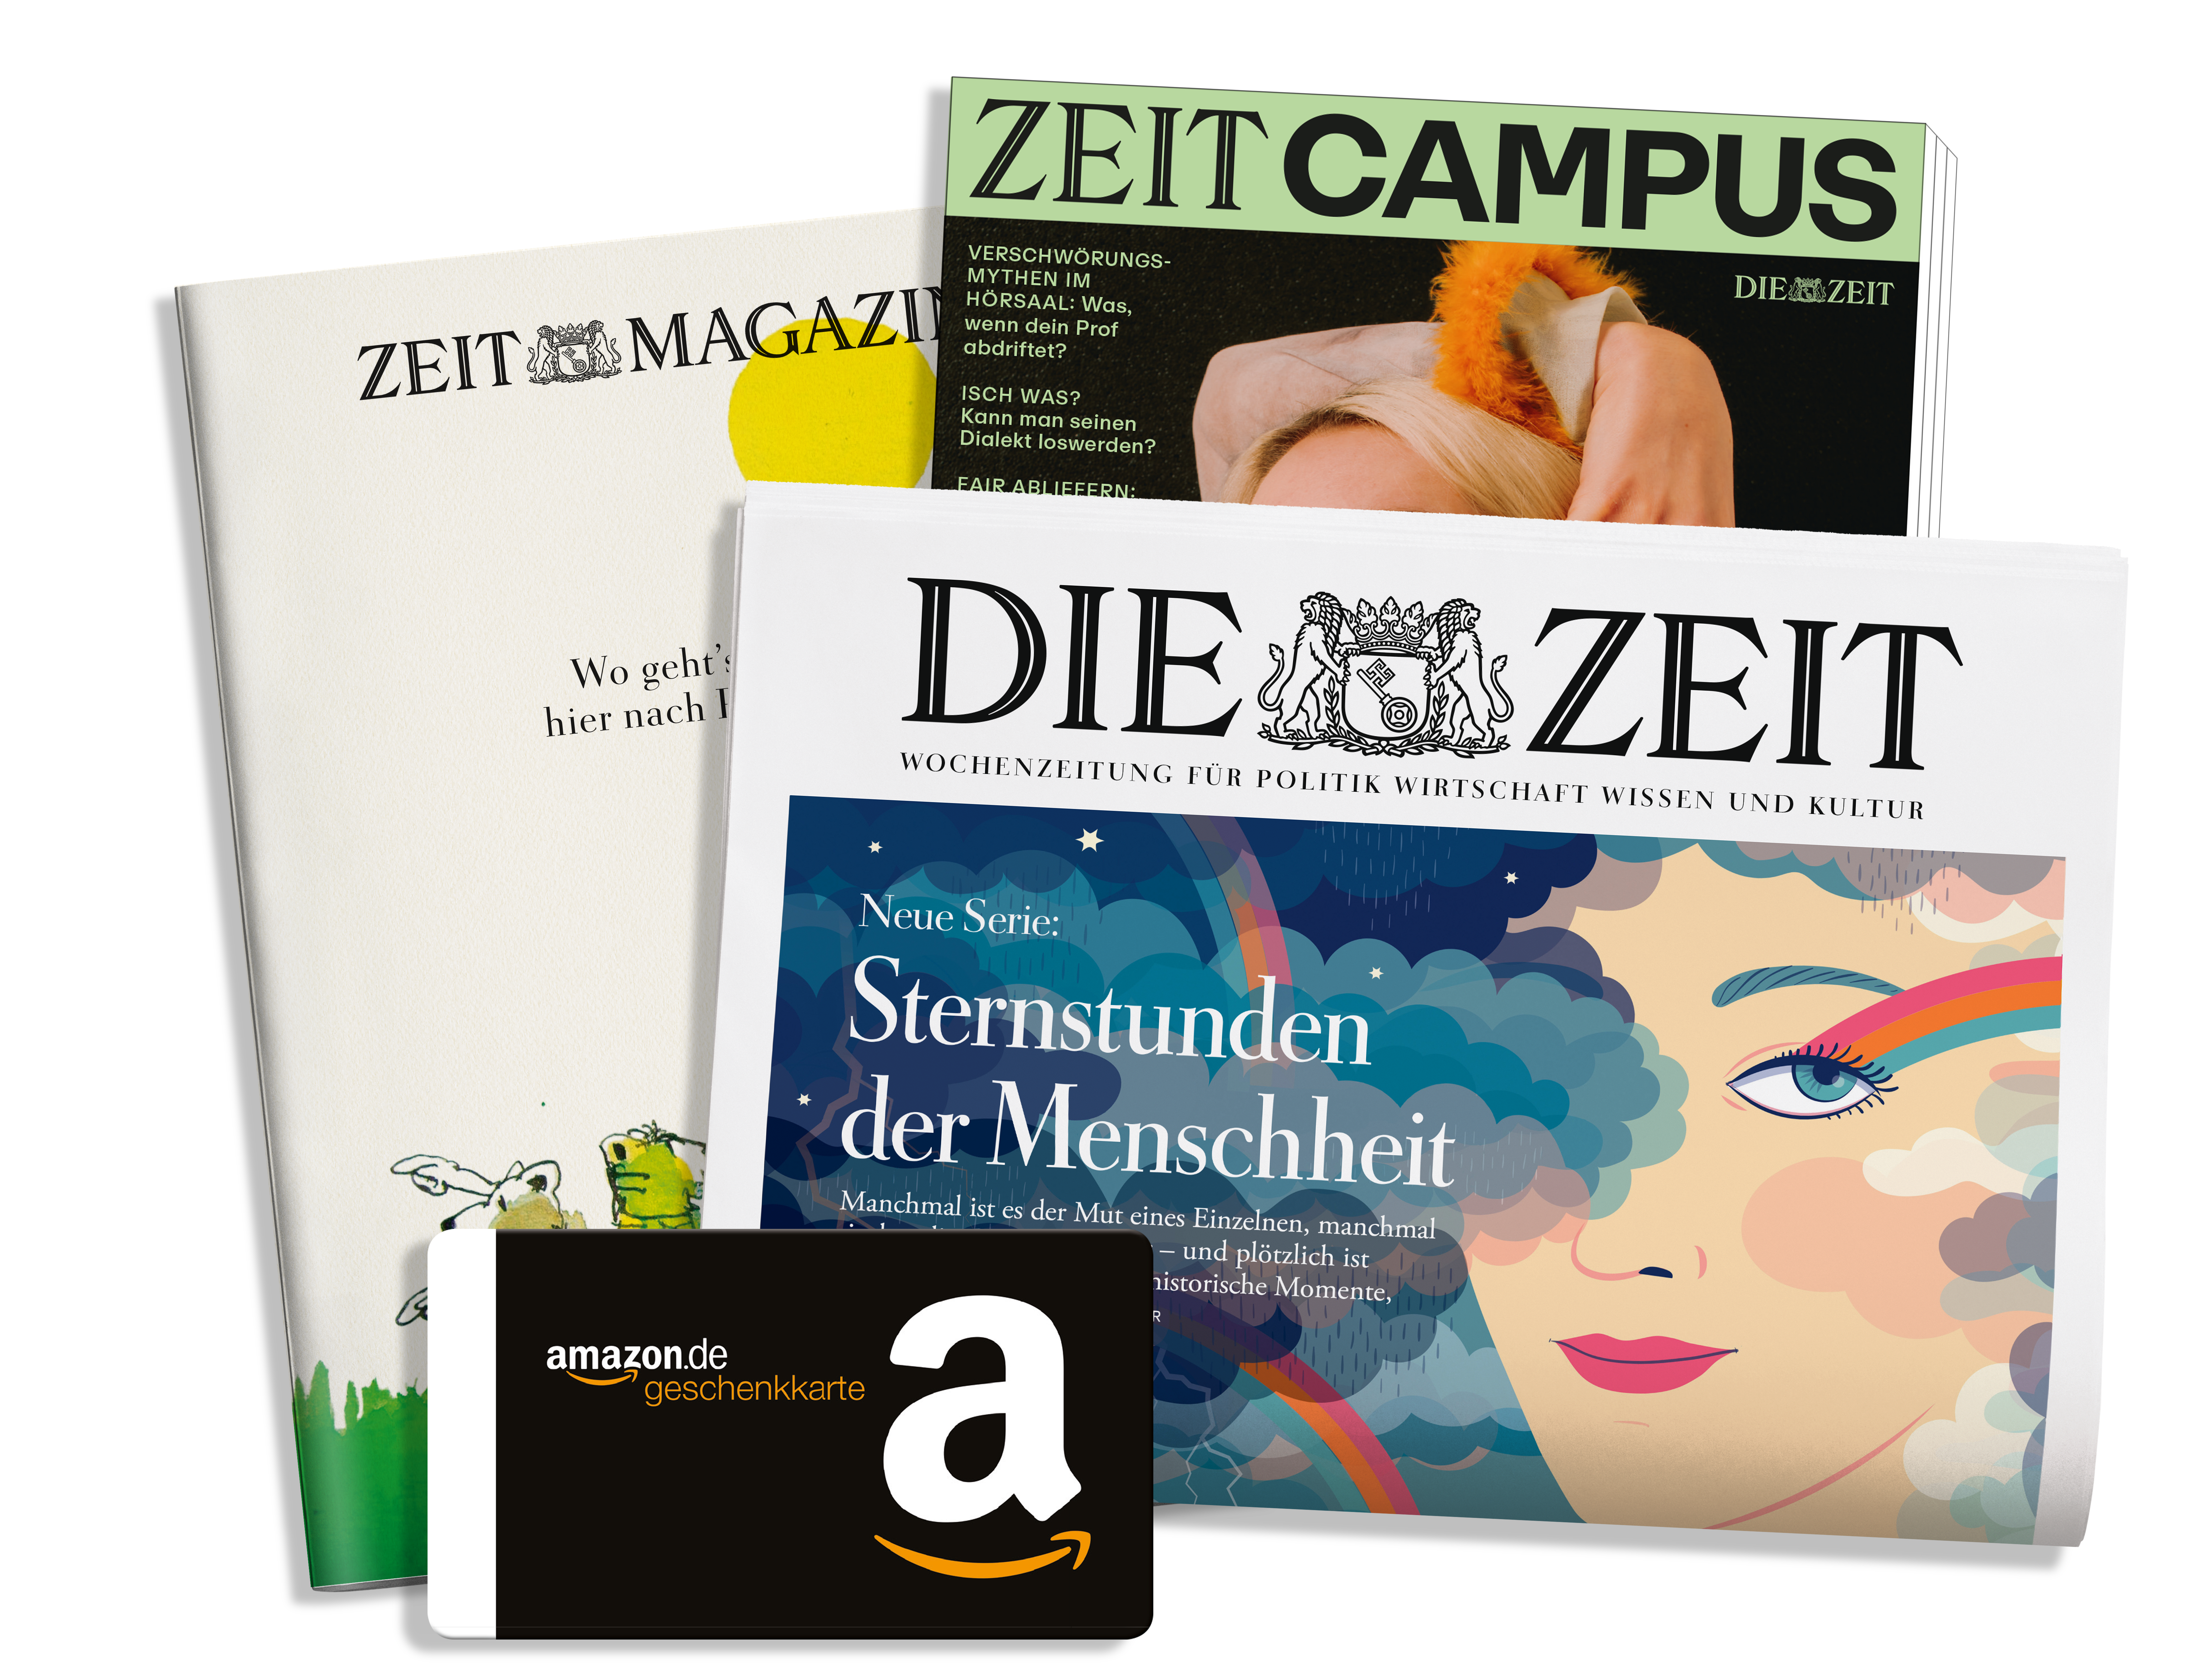 ZD Magazin Zeitung Campus Gutscheinrgb Neutral